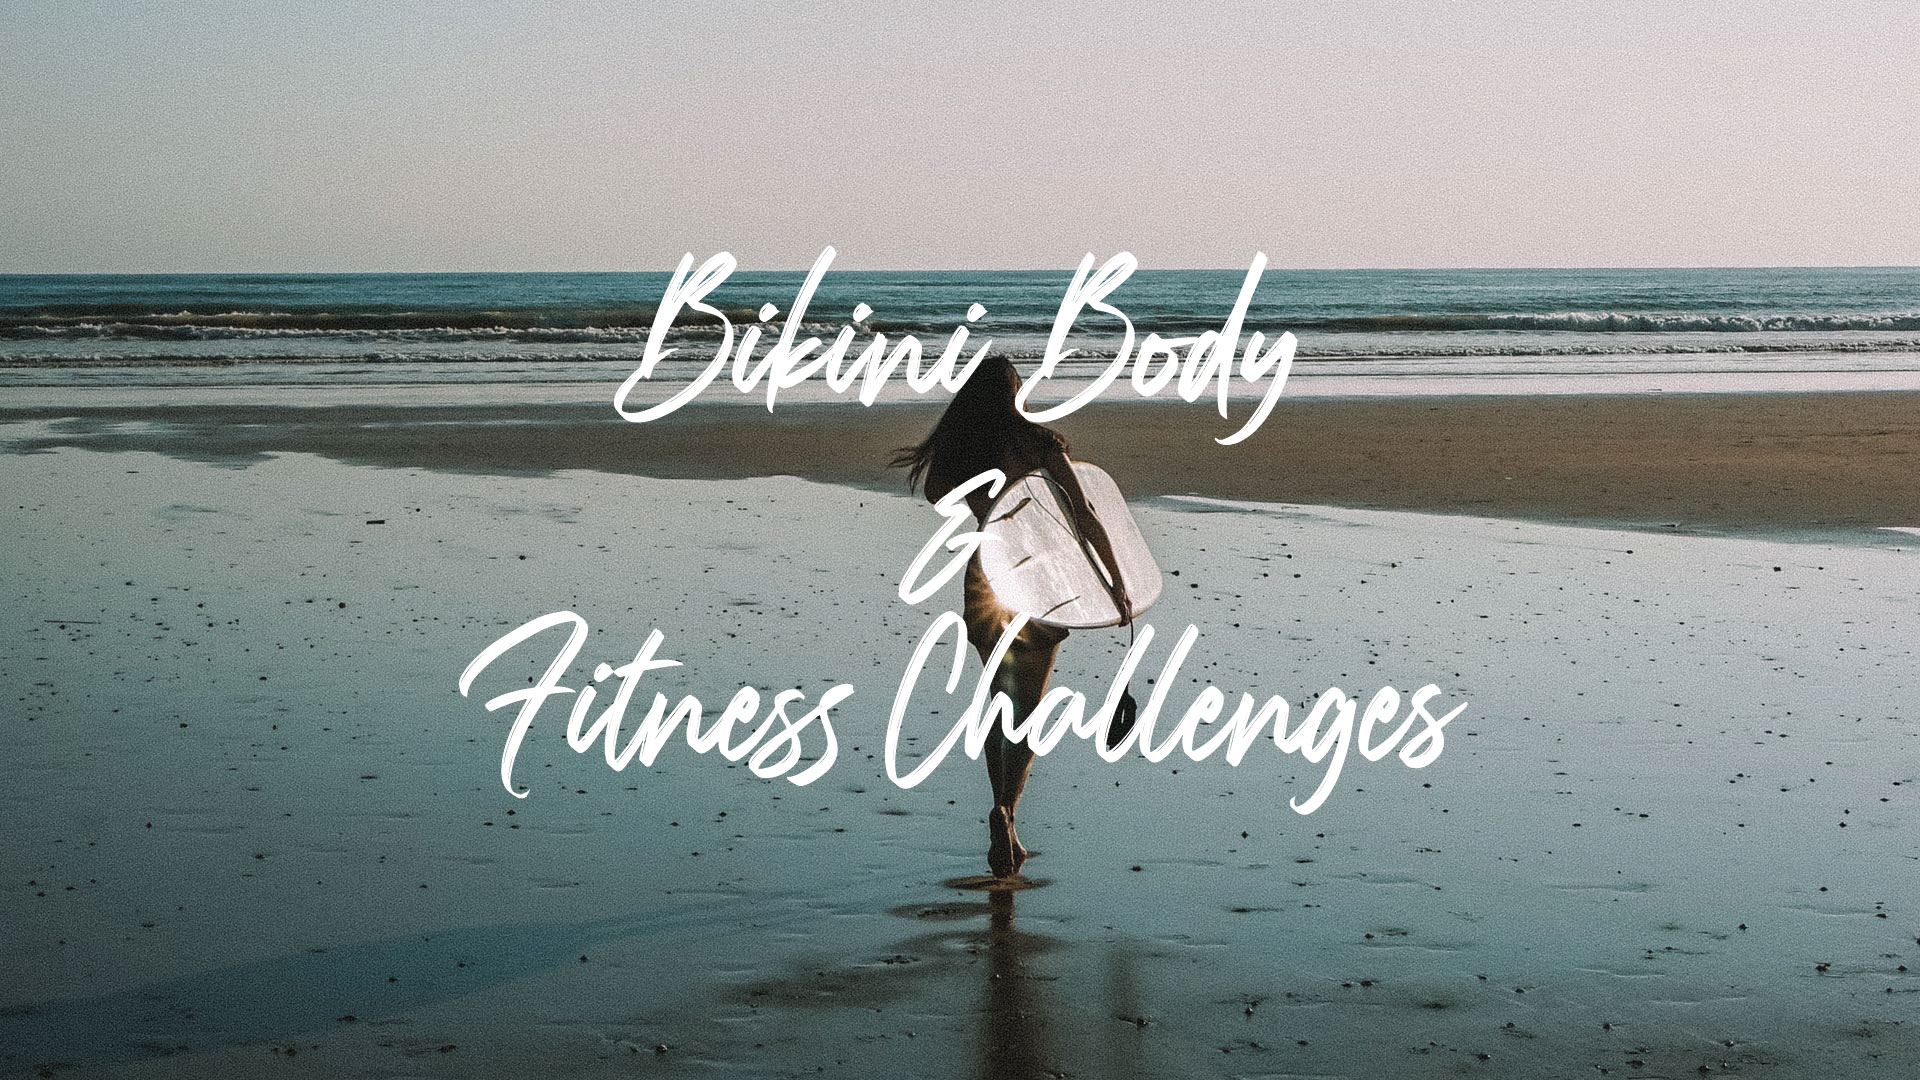 TIME TO SHINE! 

Bring Dich in Form für Deinen Sommer mit unseren Beach Body, Bikini Body & Fitness Challenges für einen gesunden Lebensstil!

Let´s go! 